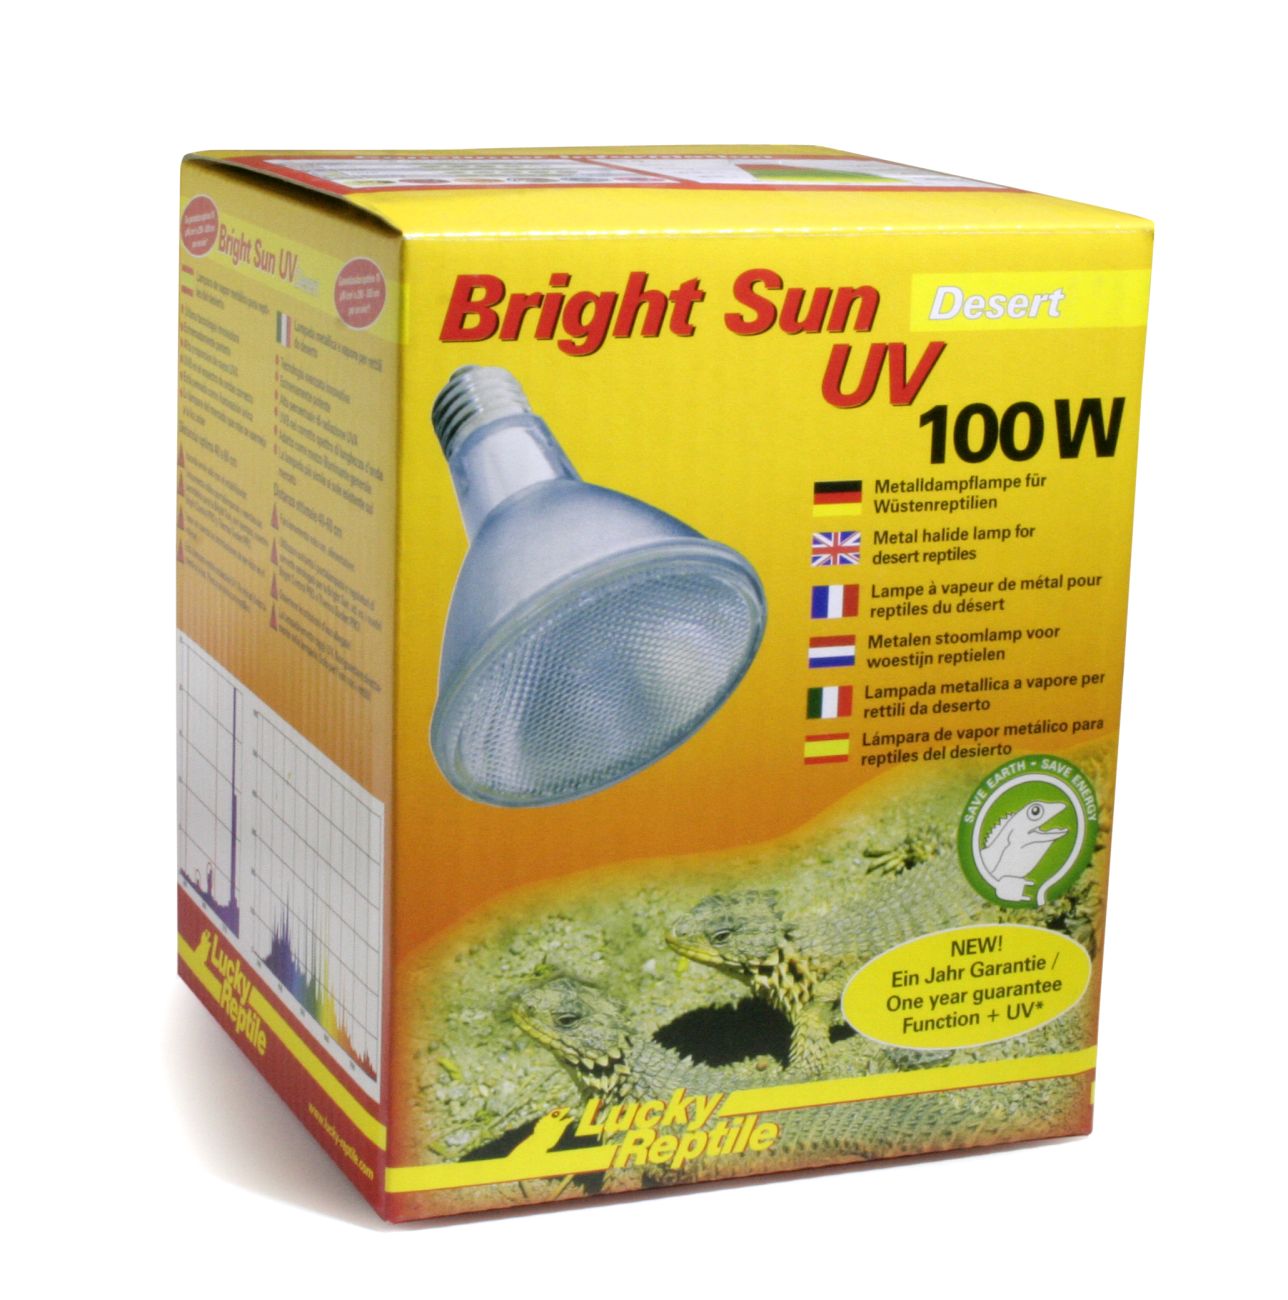 Bright Sun UV Desert - Bright Sun UV Desert